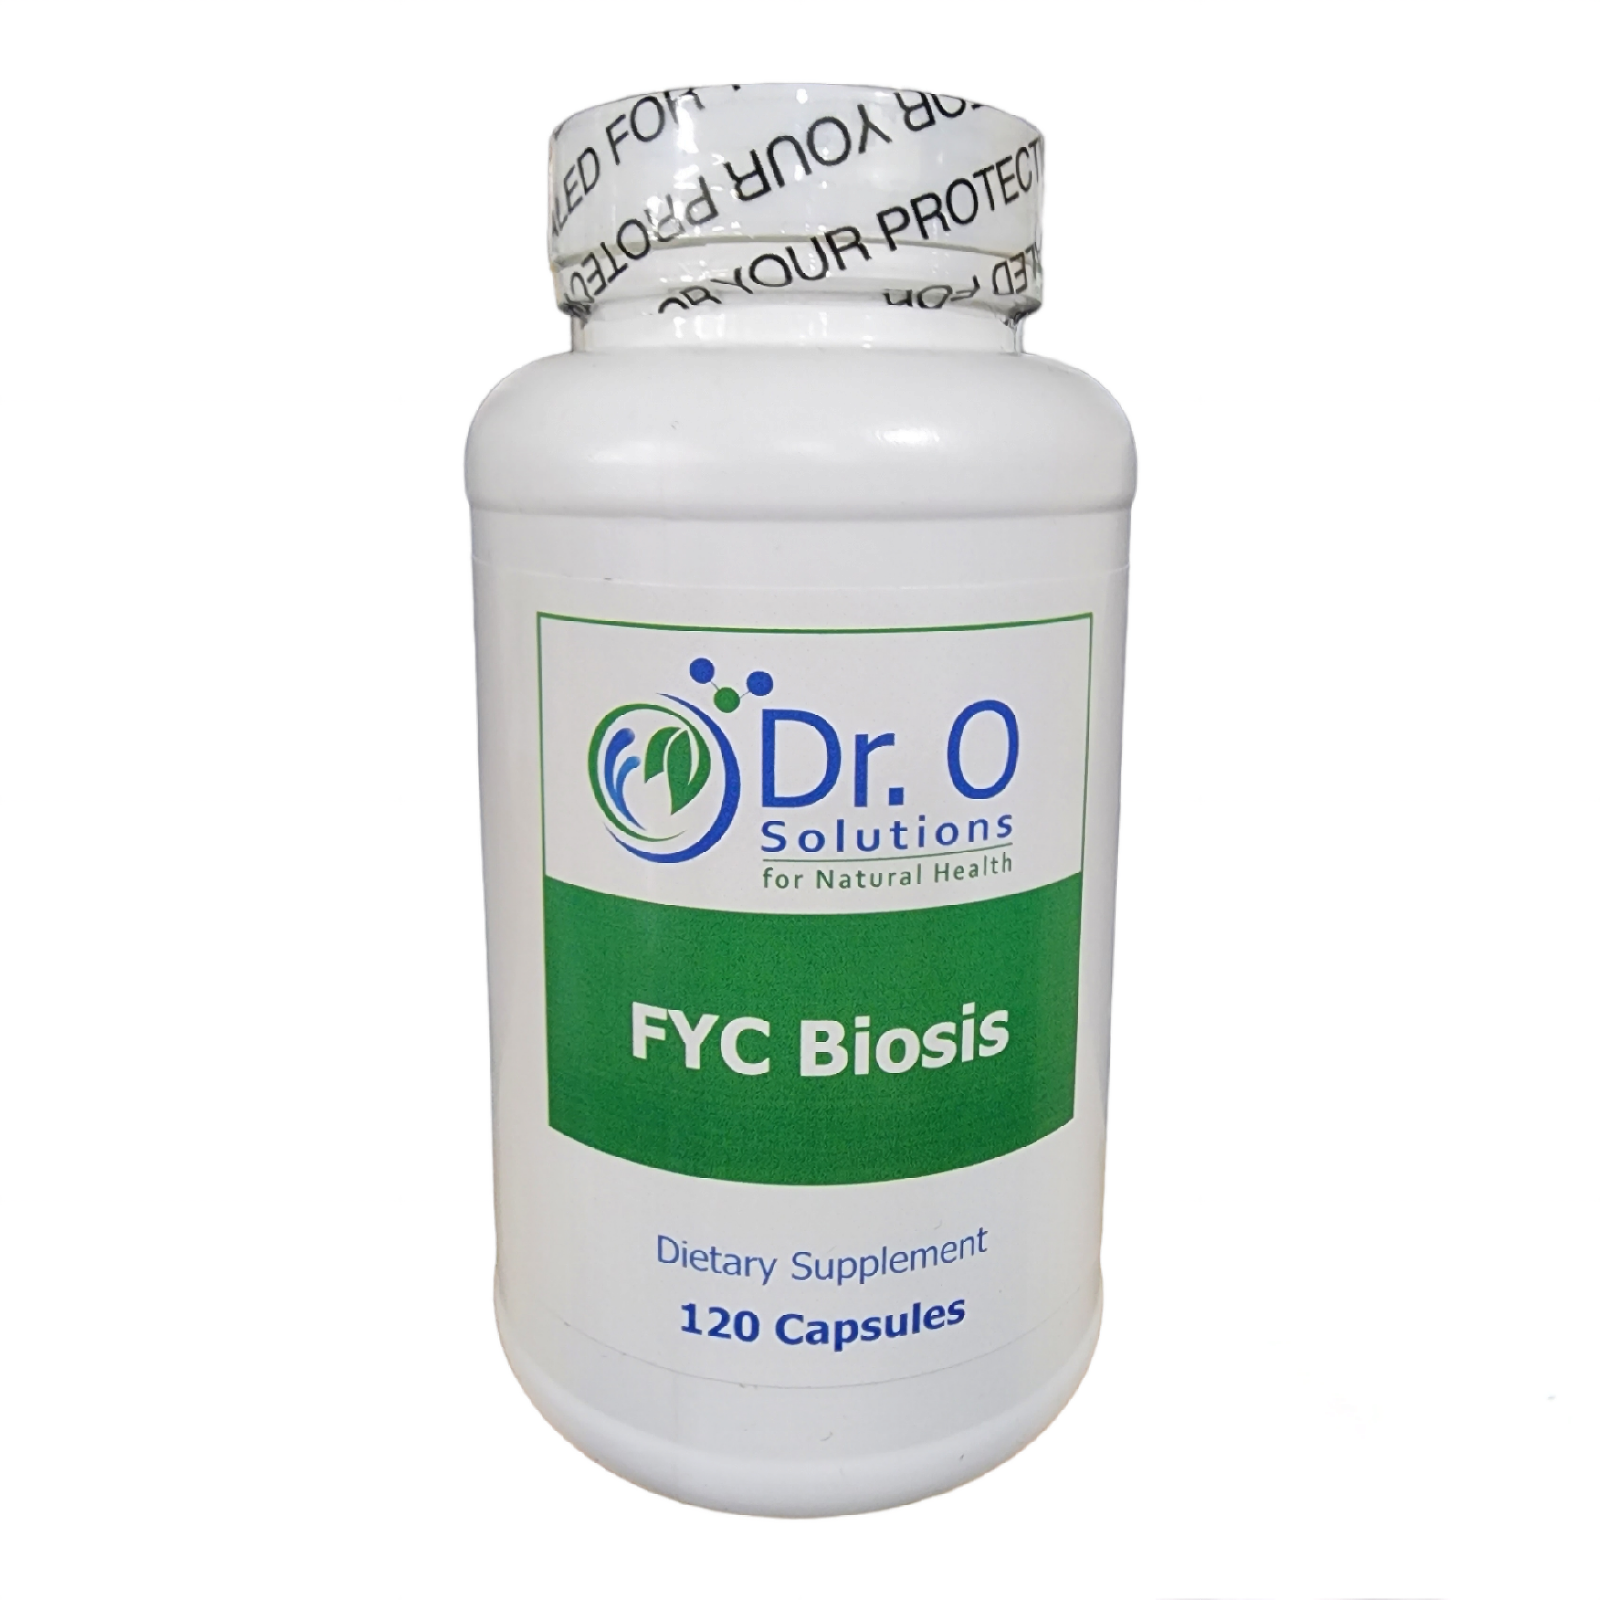 FYC-Biosis